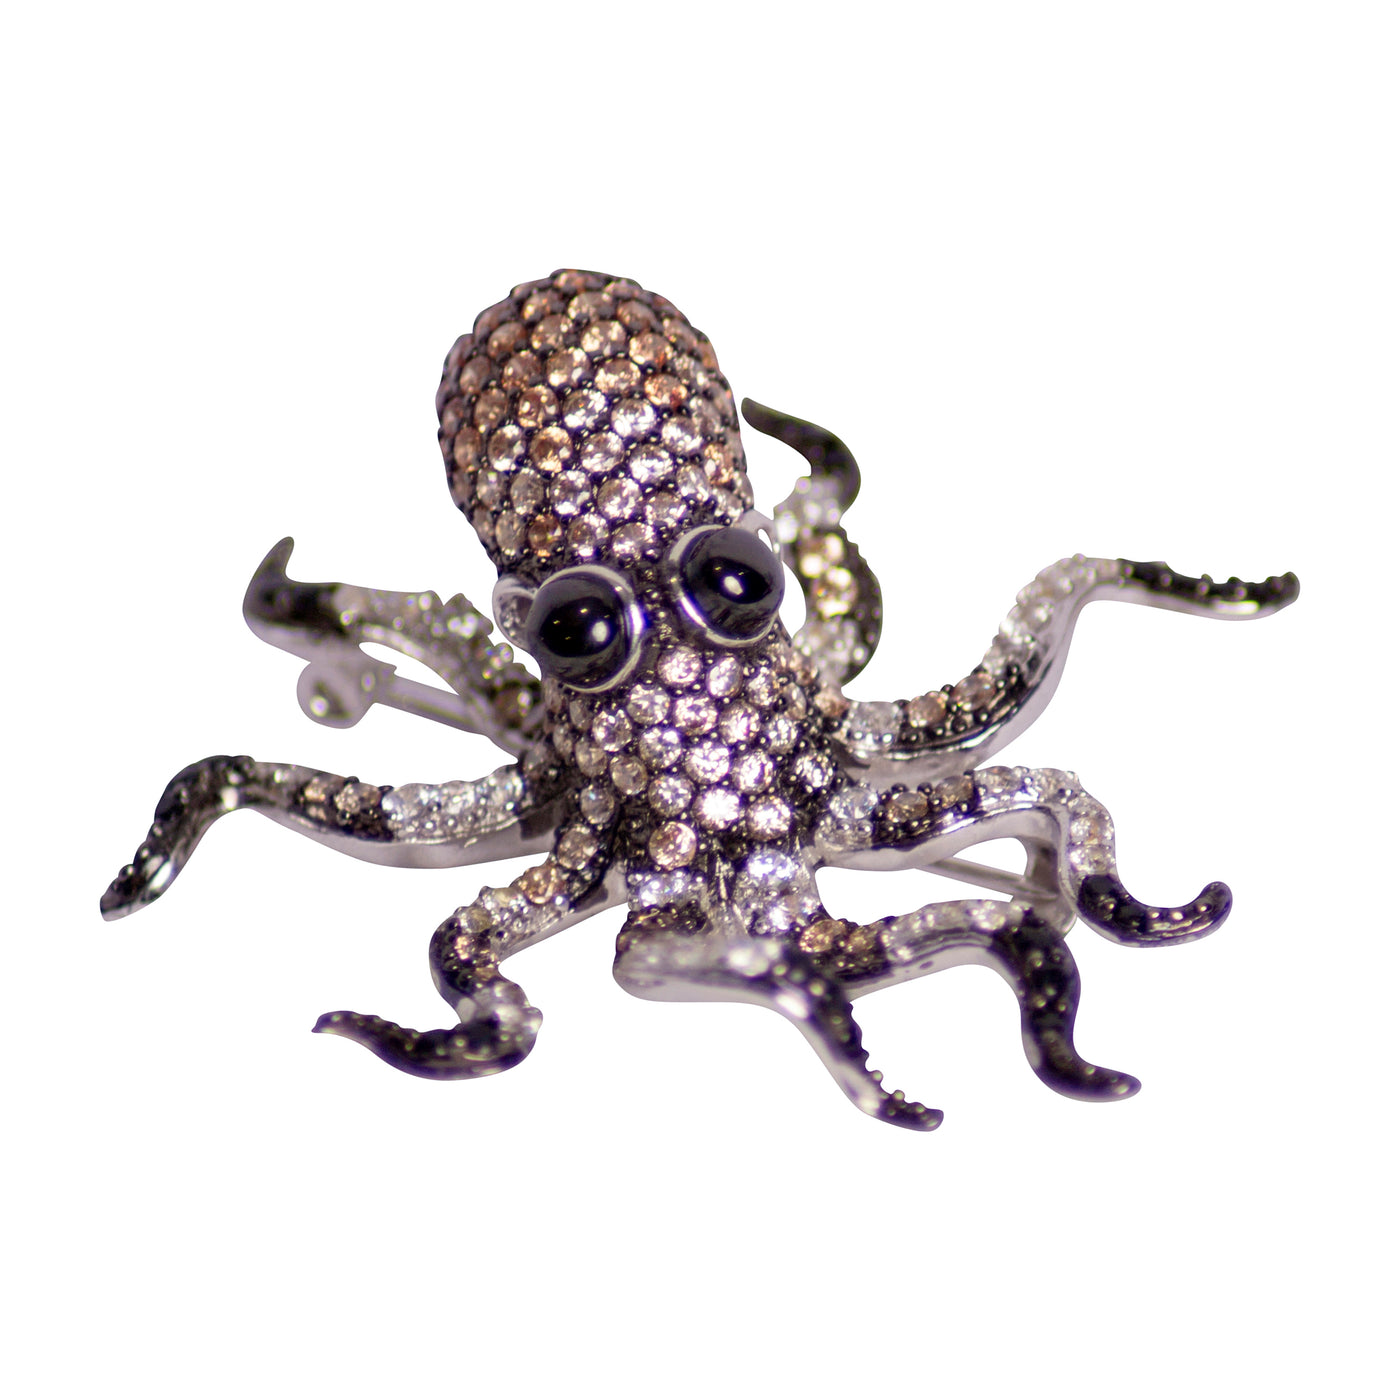 Octopus Pendant & Brooch